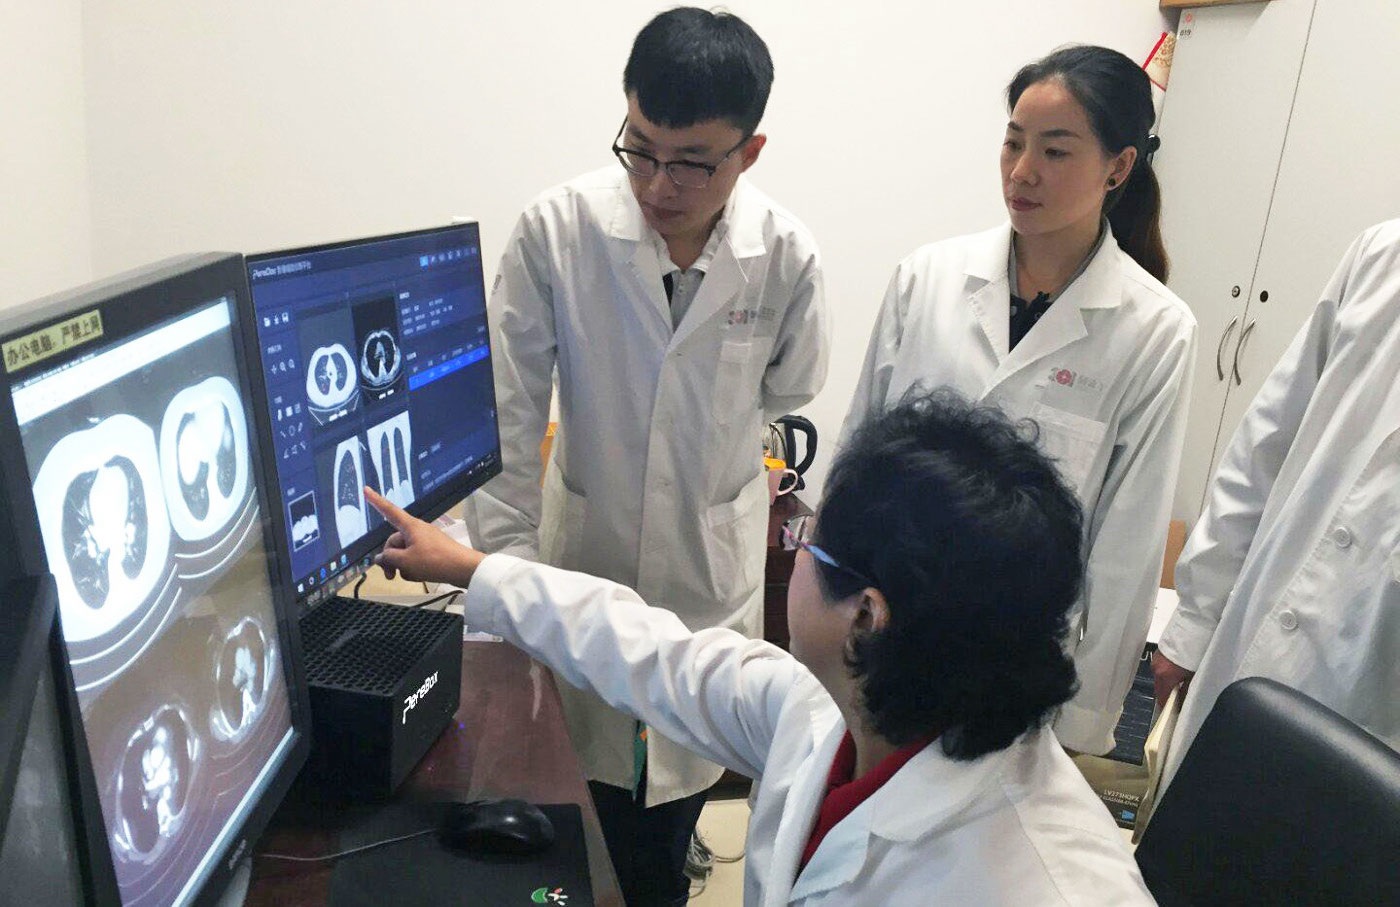 Los hospitales de China recurren a inteligencia artificial para compensar la escasez de médicos